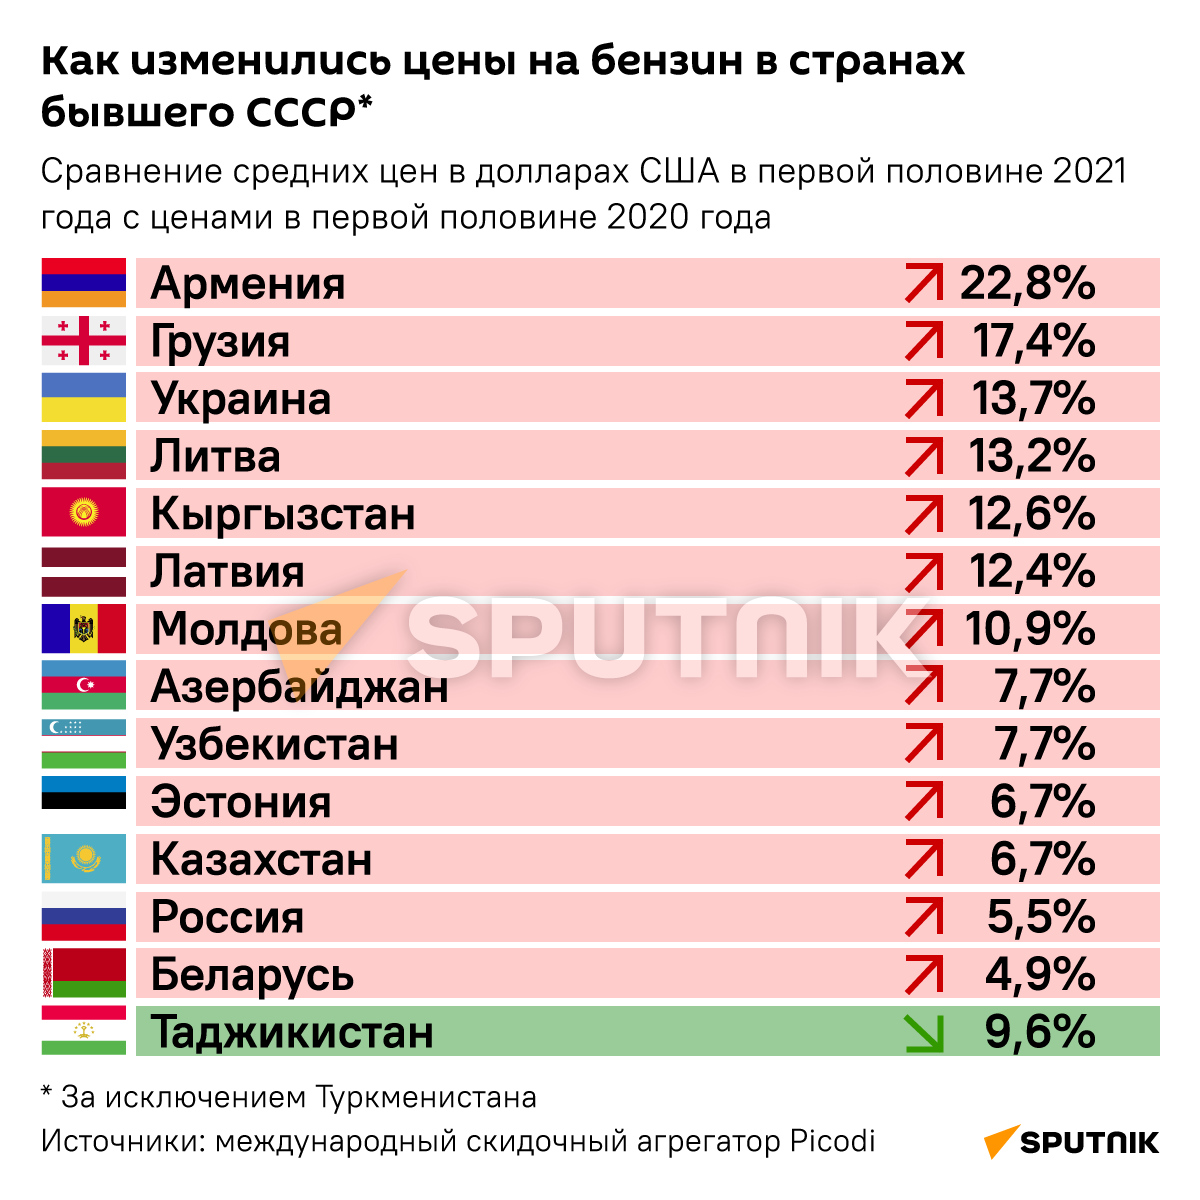 Как изменились цены на бензин в странах бывшего СССР в 2021 году - Sputnik Беларусь